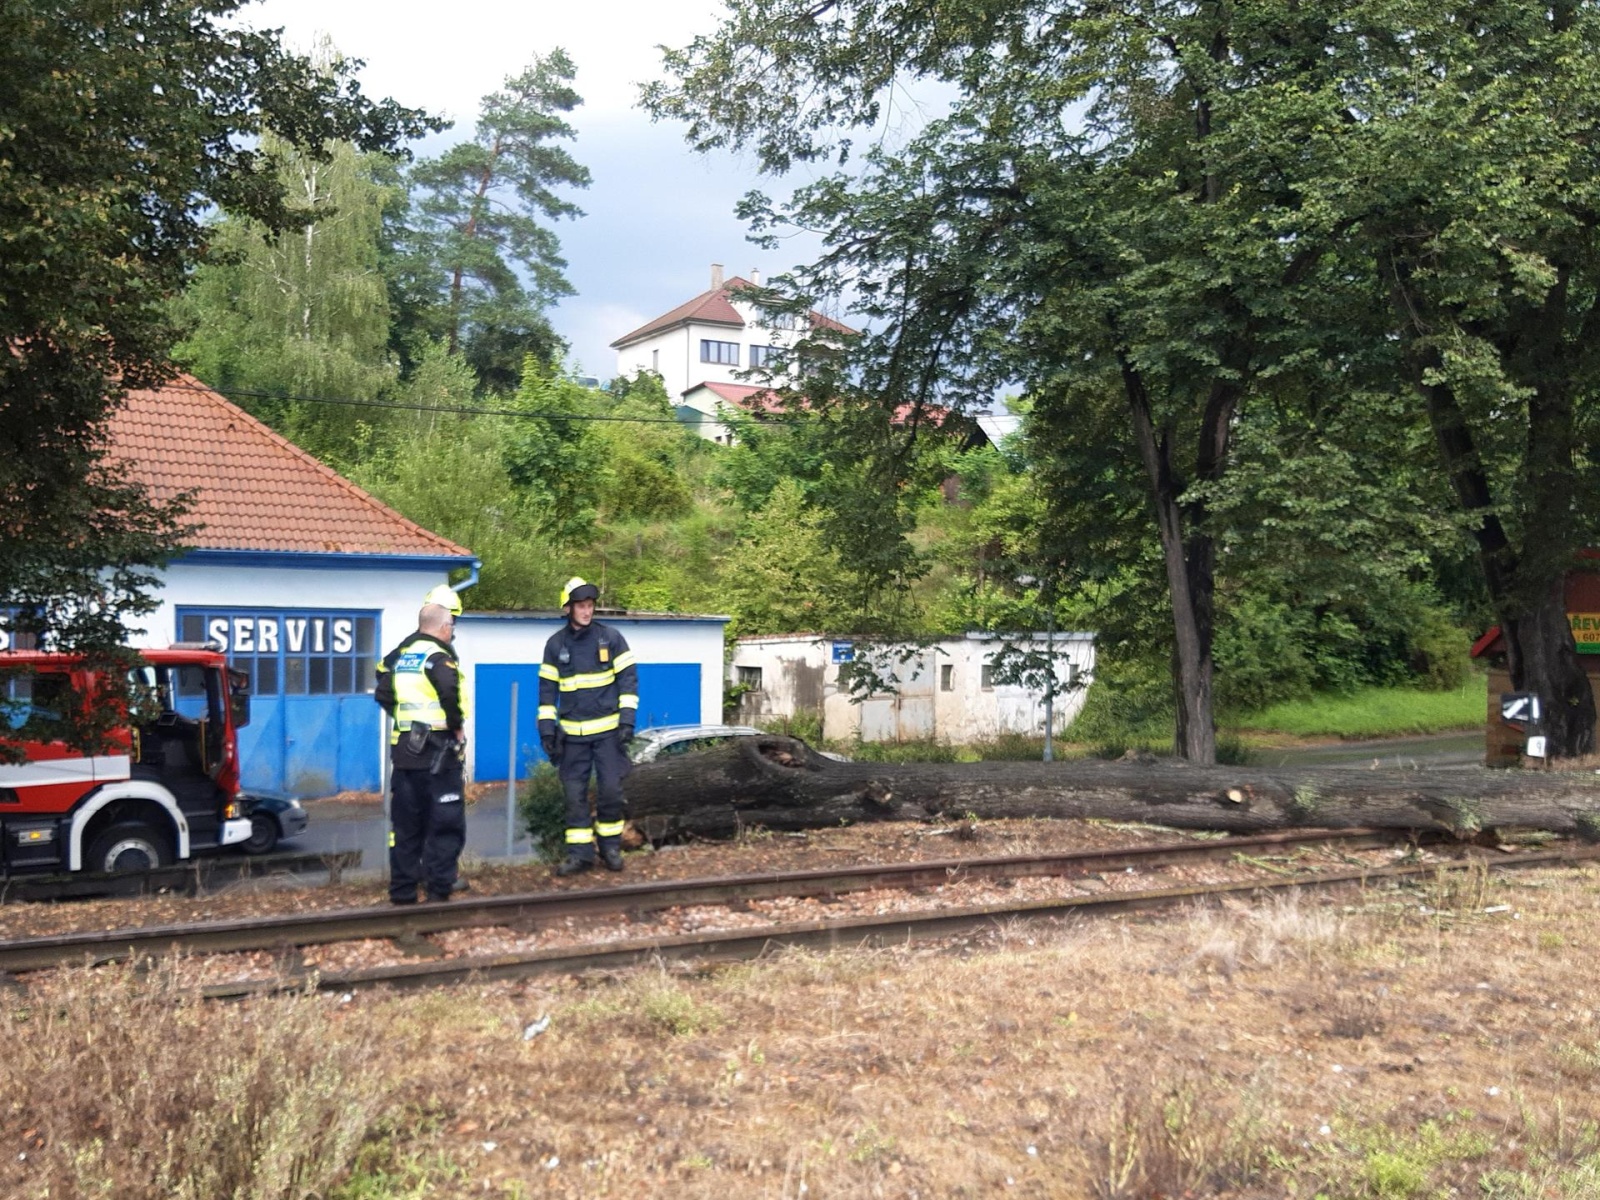 280624-Odstraňování suchého stromu spadlého na koleje v těsné blízkosti vlakového nádraží v Sedlčanech.jpg